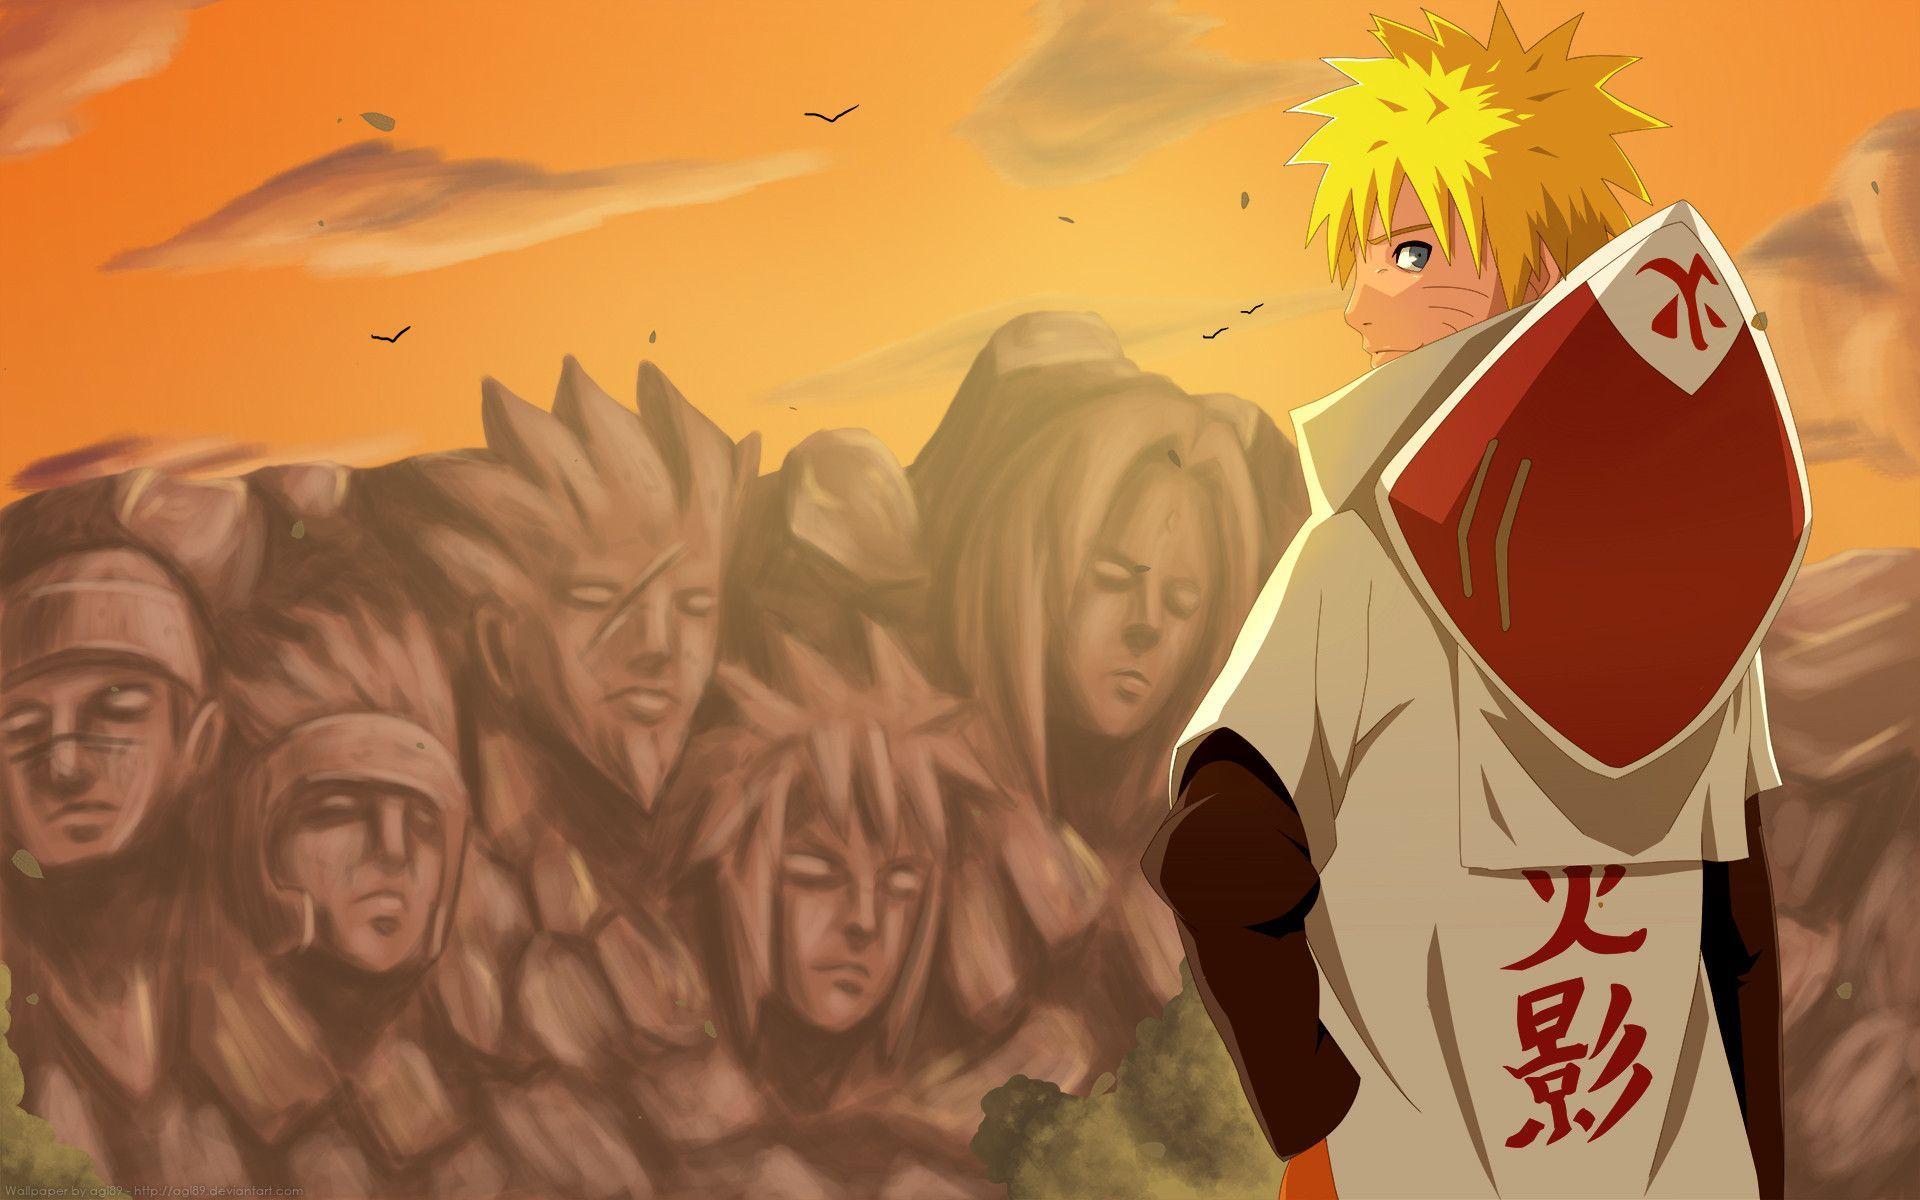 Hokage: Các fan của Naruto nhất định phải xem ảnh liên quan đến Hokage để thấy được sự kiên định và sự ủng hộ của những người đứng đầu làng ninja trong Naruto Shippuden. Hãy tìm hiểu về những quyết định trọng đại mà Hokage đã phải đưa ra để bảo vệ người dân làng ninja.